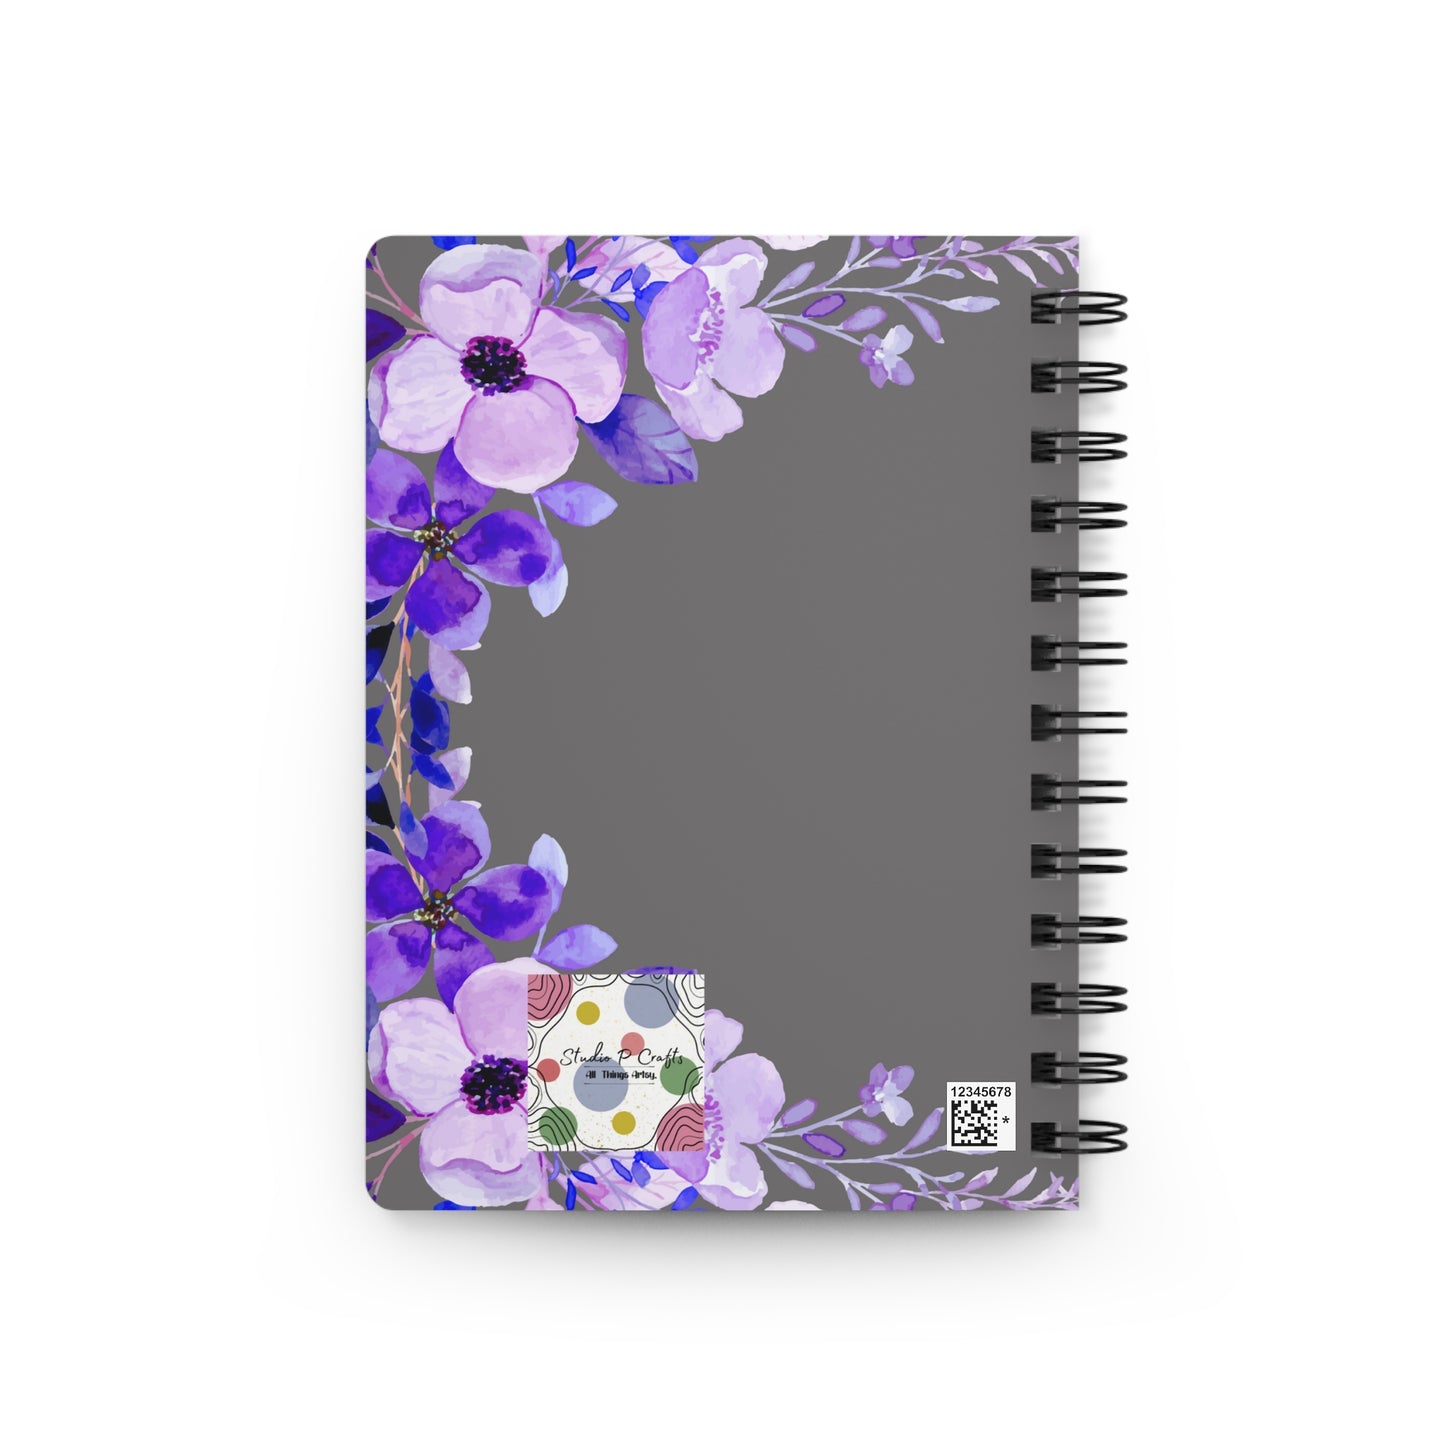 Lavender Vines Notebook, Flower Notebook, Flower Pattern Notebook, Pattern Notebook, College Notebook, School Notebook,  Spiral Bound Journal